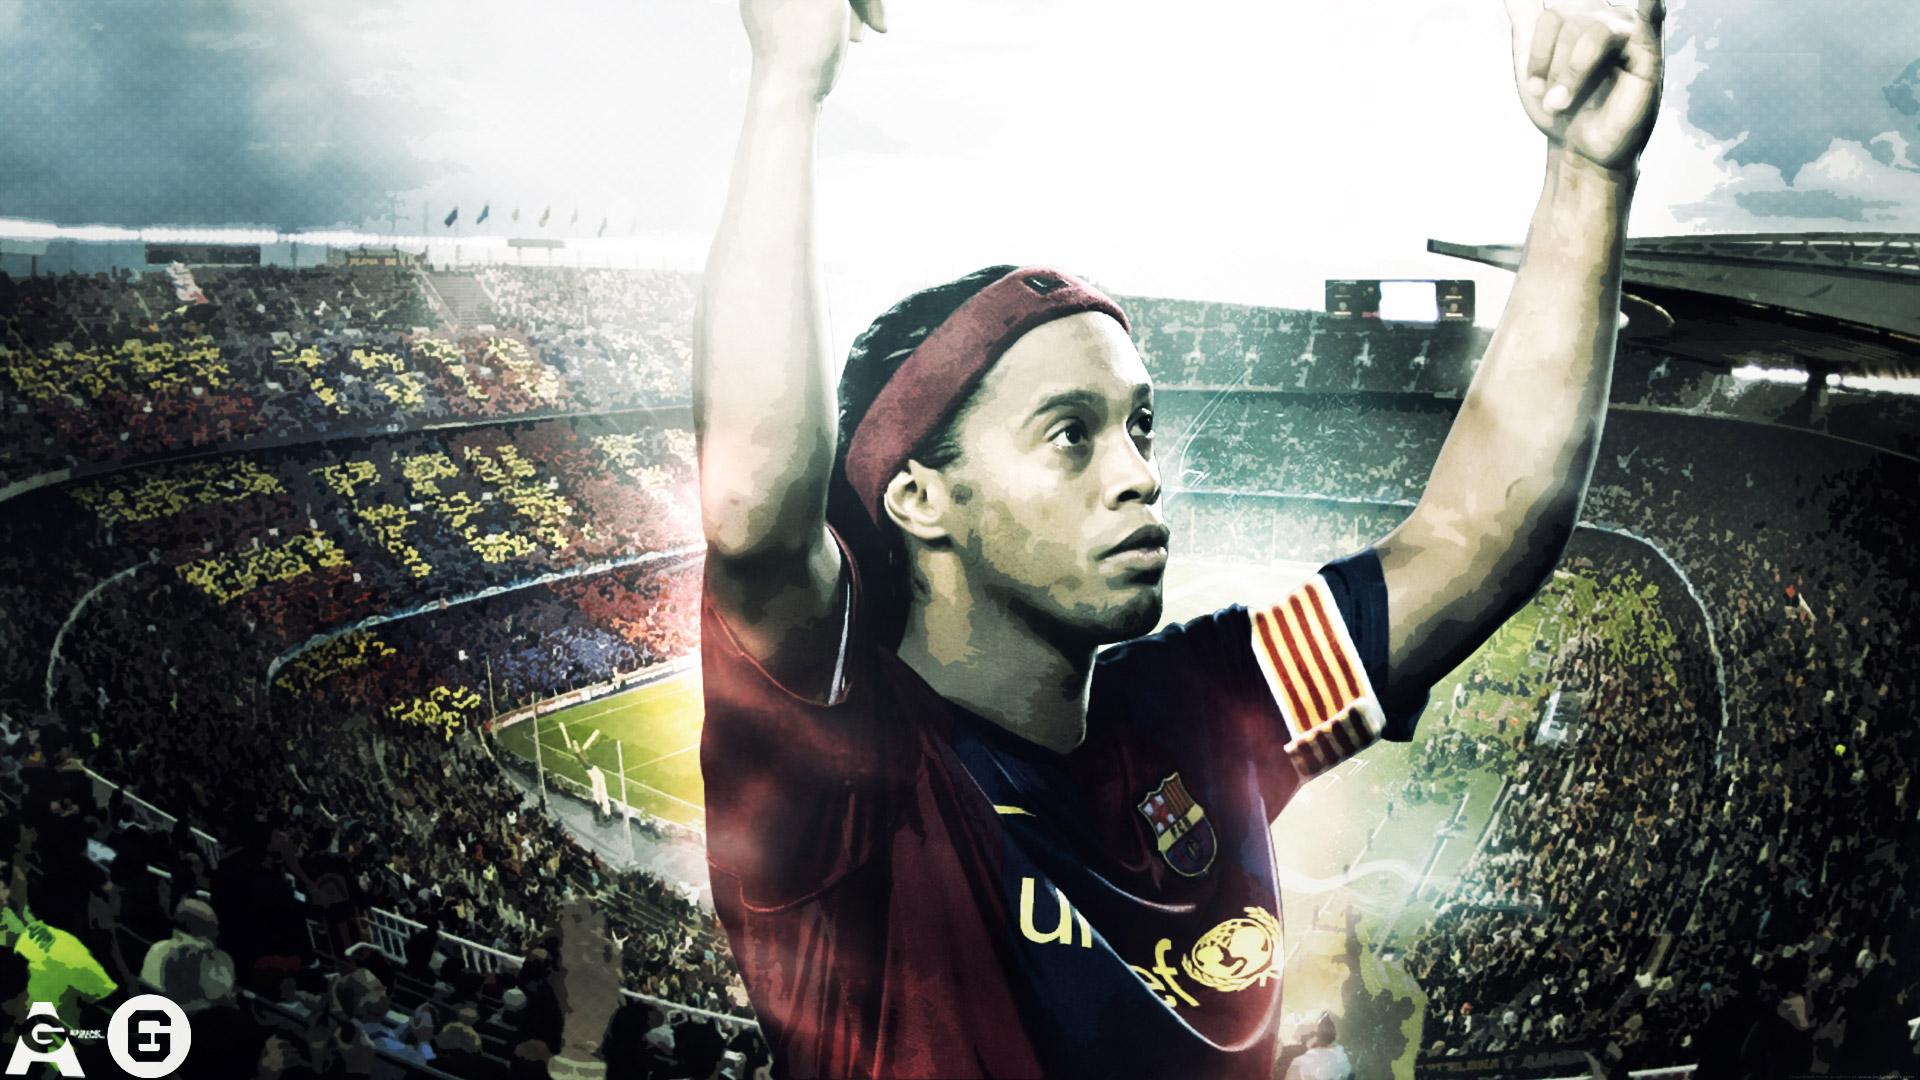 Super High Quality Ronaldinho Background Image for Free